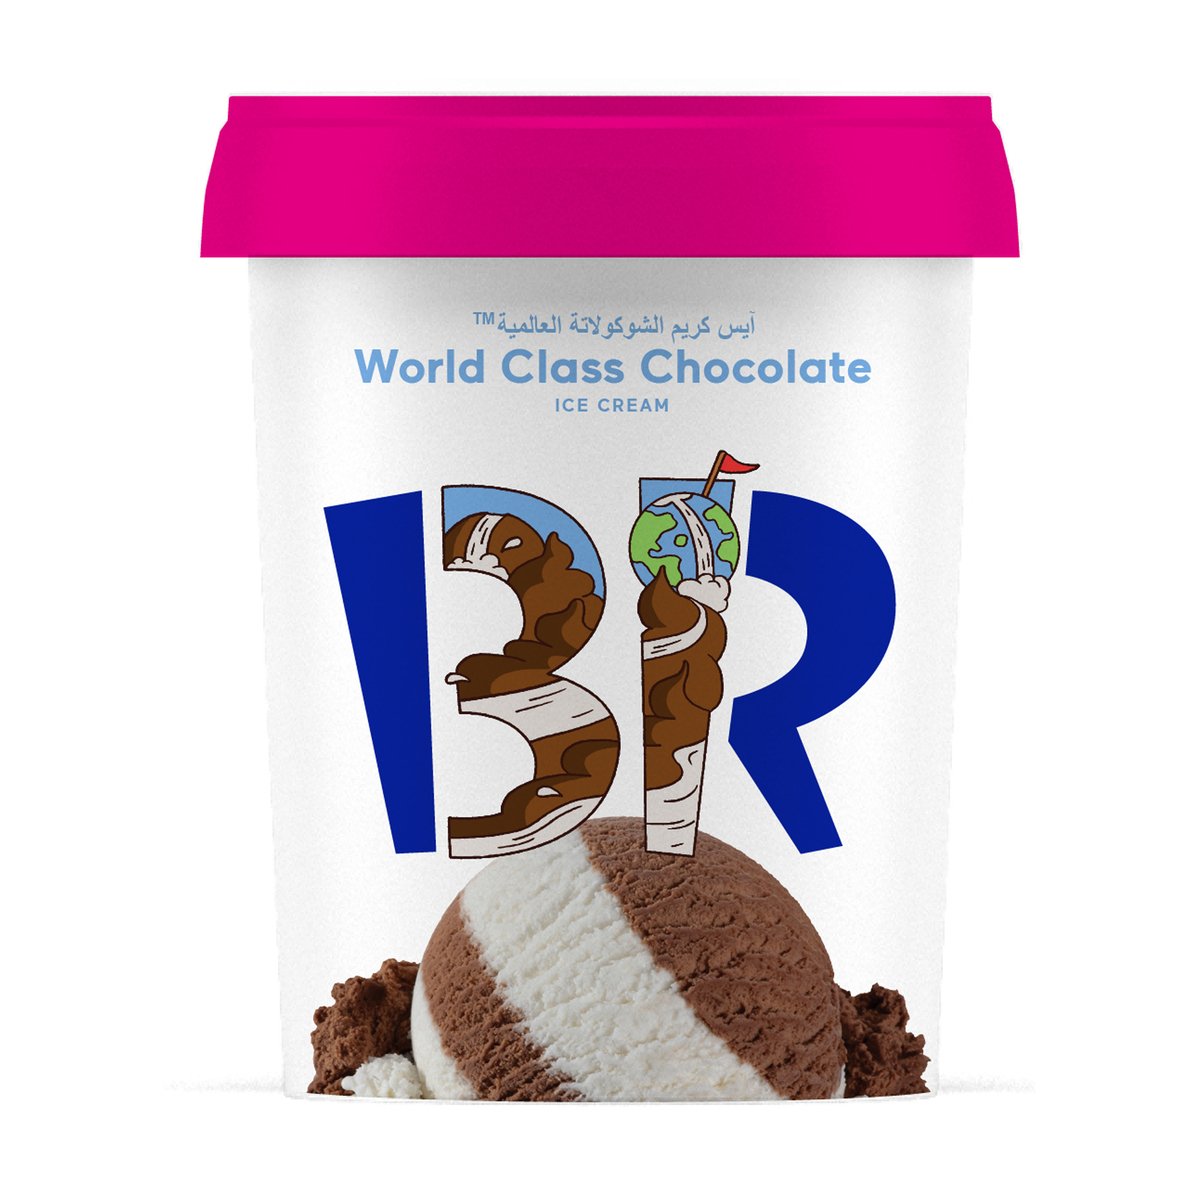 اشتري قم بشراء باسكن روبنز آيس كريم الشوكولاتة العالمية 1 لتر Online at Best Price من الموقع - من لولو هايبر ماركت Ice Cream Take Home في السعودية